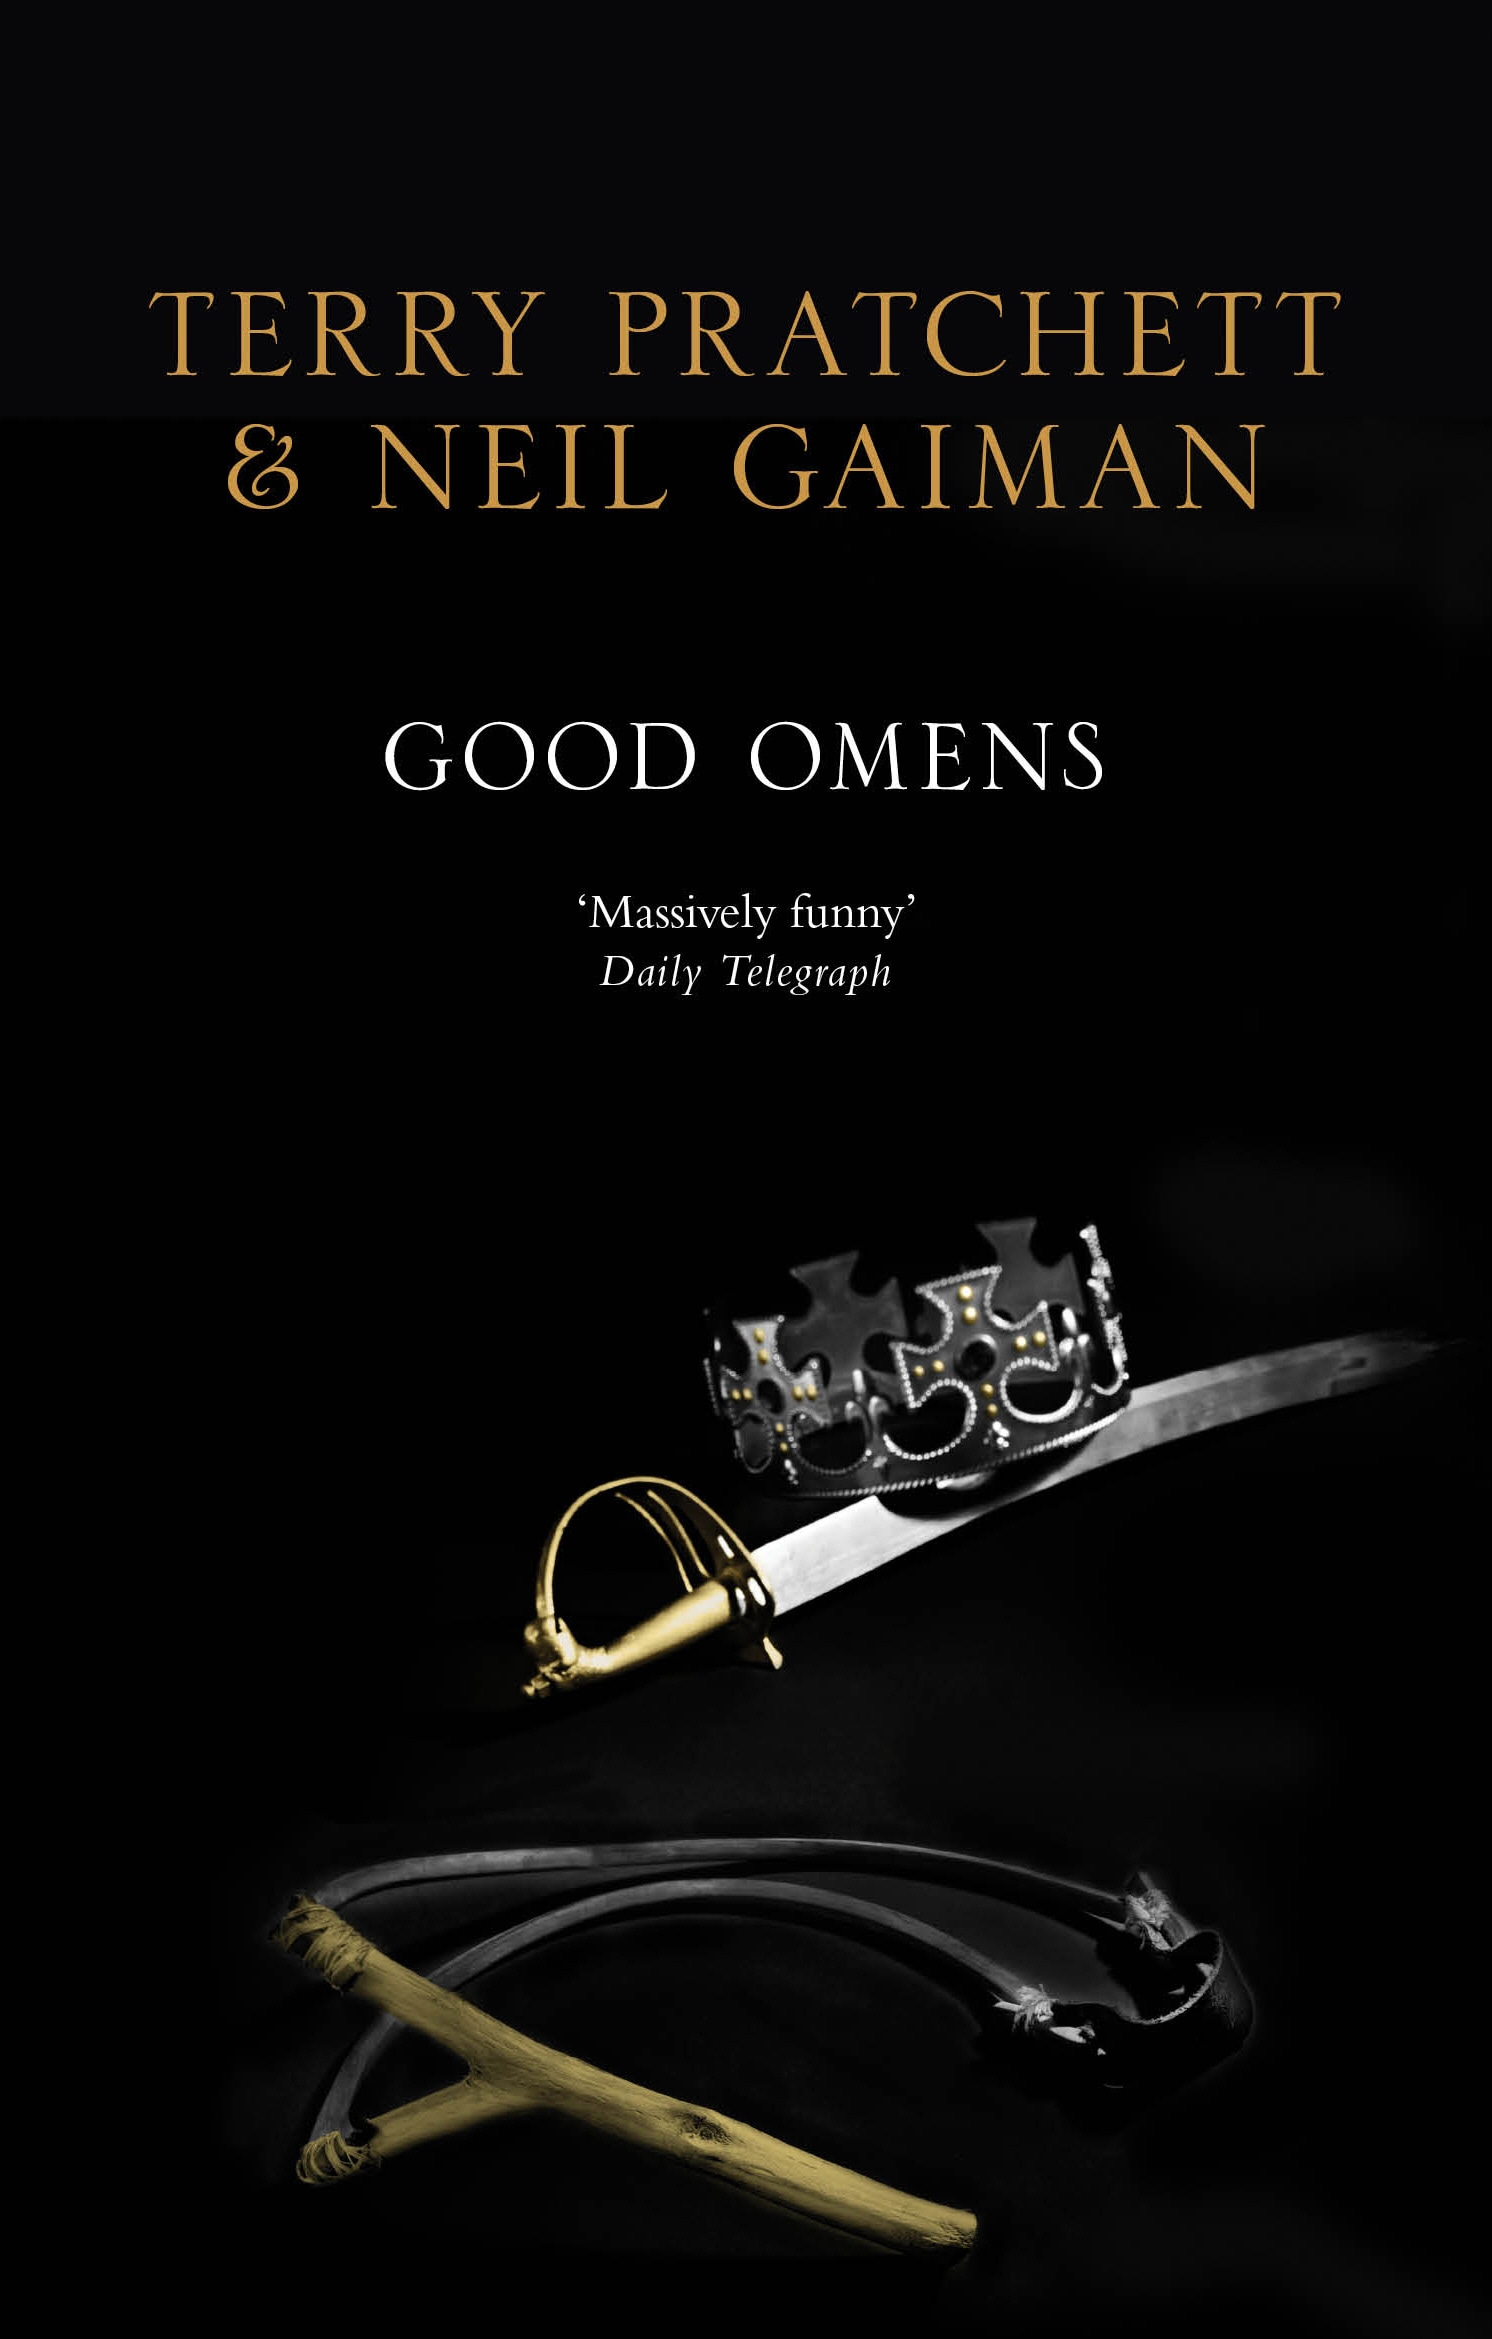 Book “Good Omens” by Neil Gaiman, Terry Pratchett — October 13, 2011